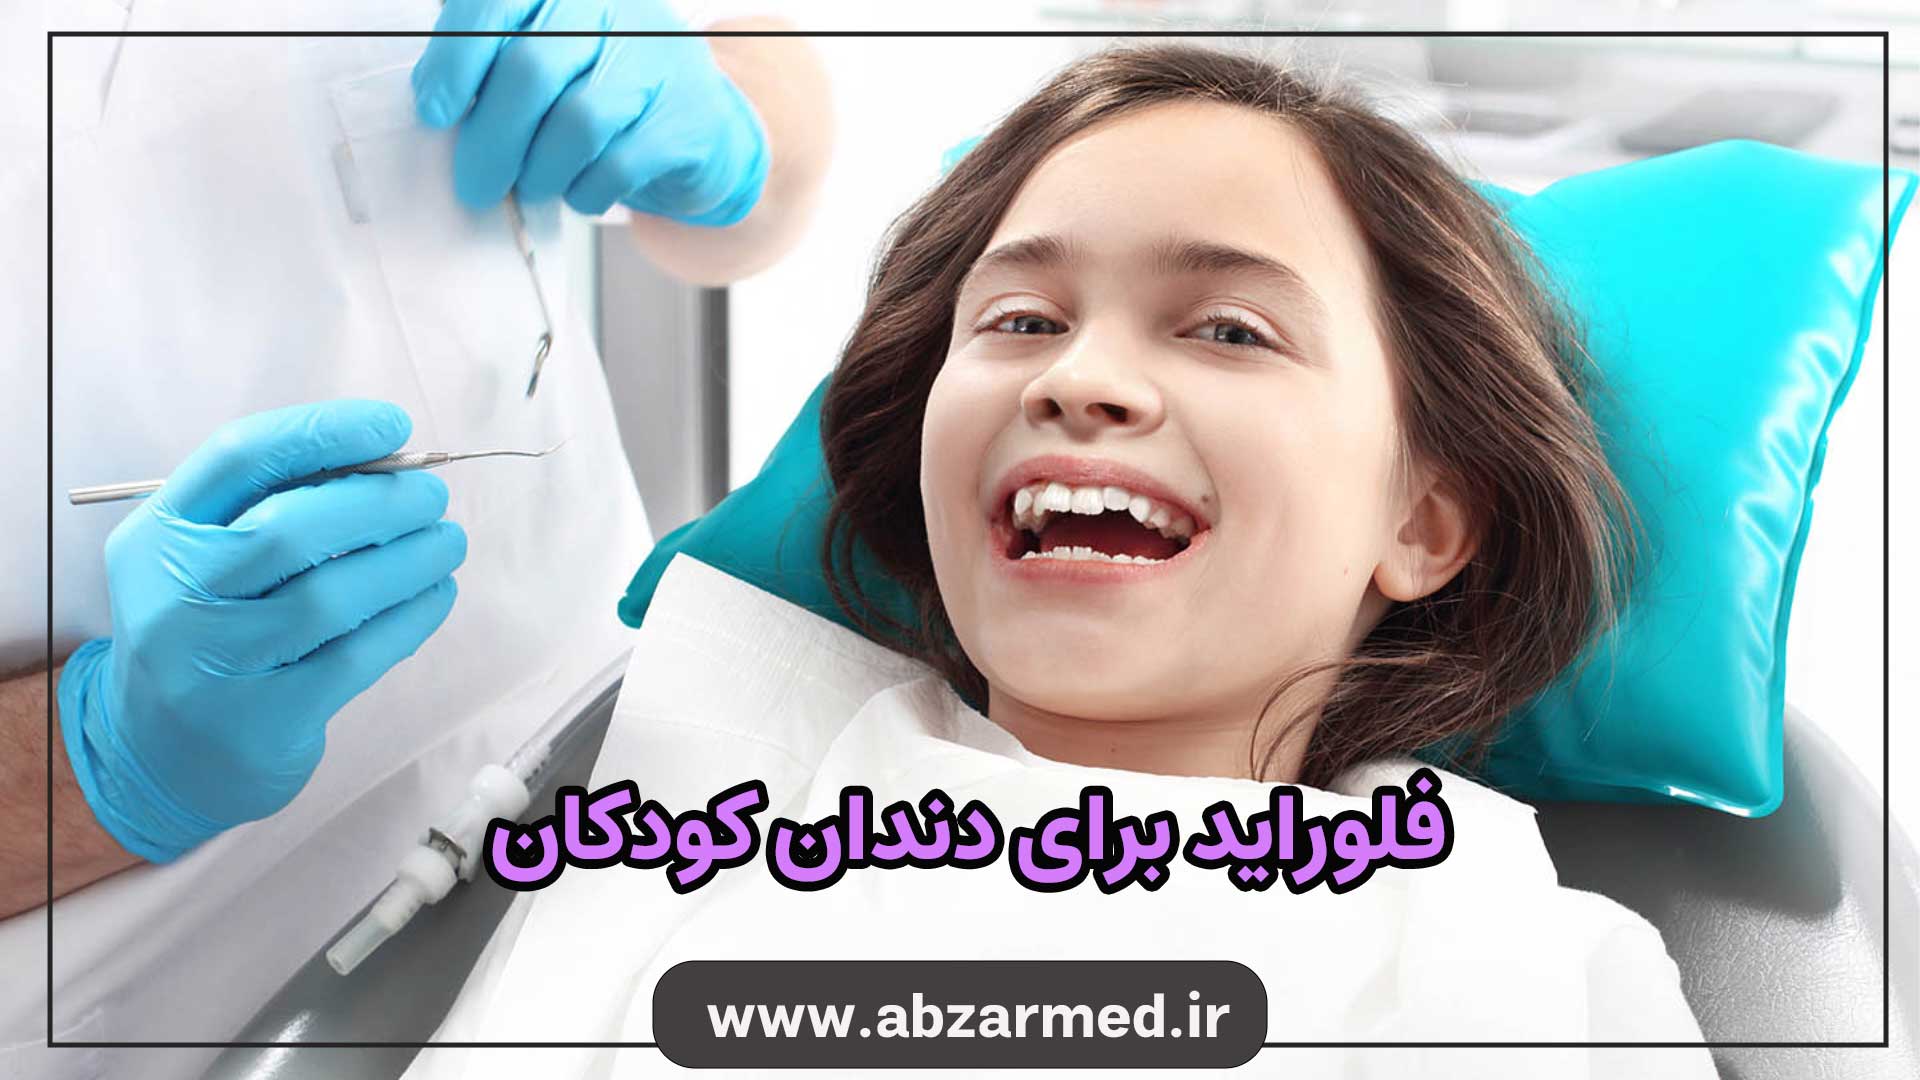 فلوراید برای دندان کودکان با هدف از بین بردن پوسیدگی دندان ها